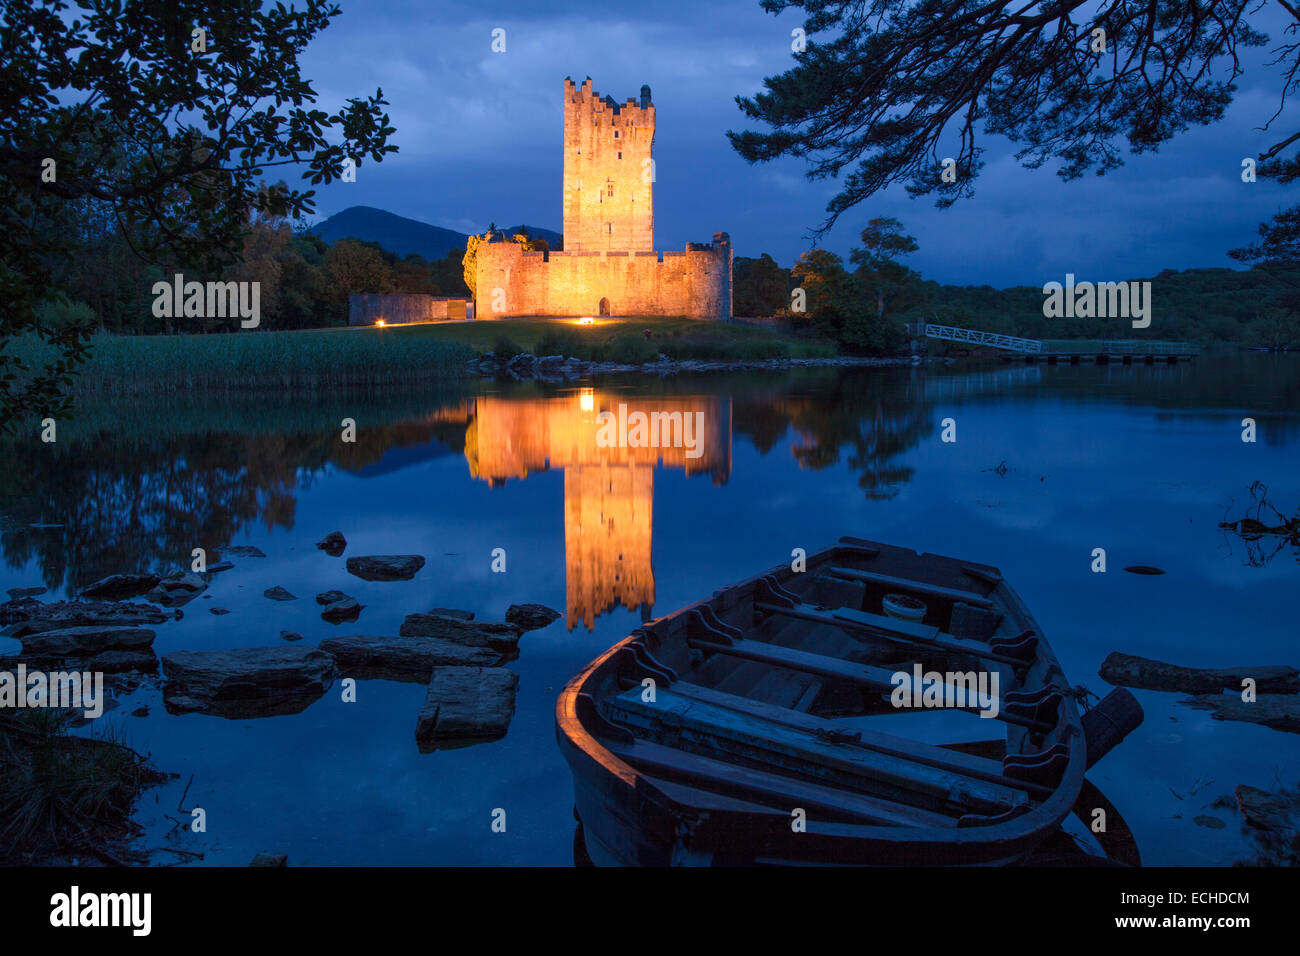 Barco de pesca y el castillo Ross iluminada al anochecer, Lough Leane, Parque Nacional de Killarney, condado de Kerry, Irlanda. Foto de stock